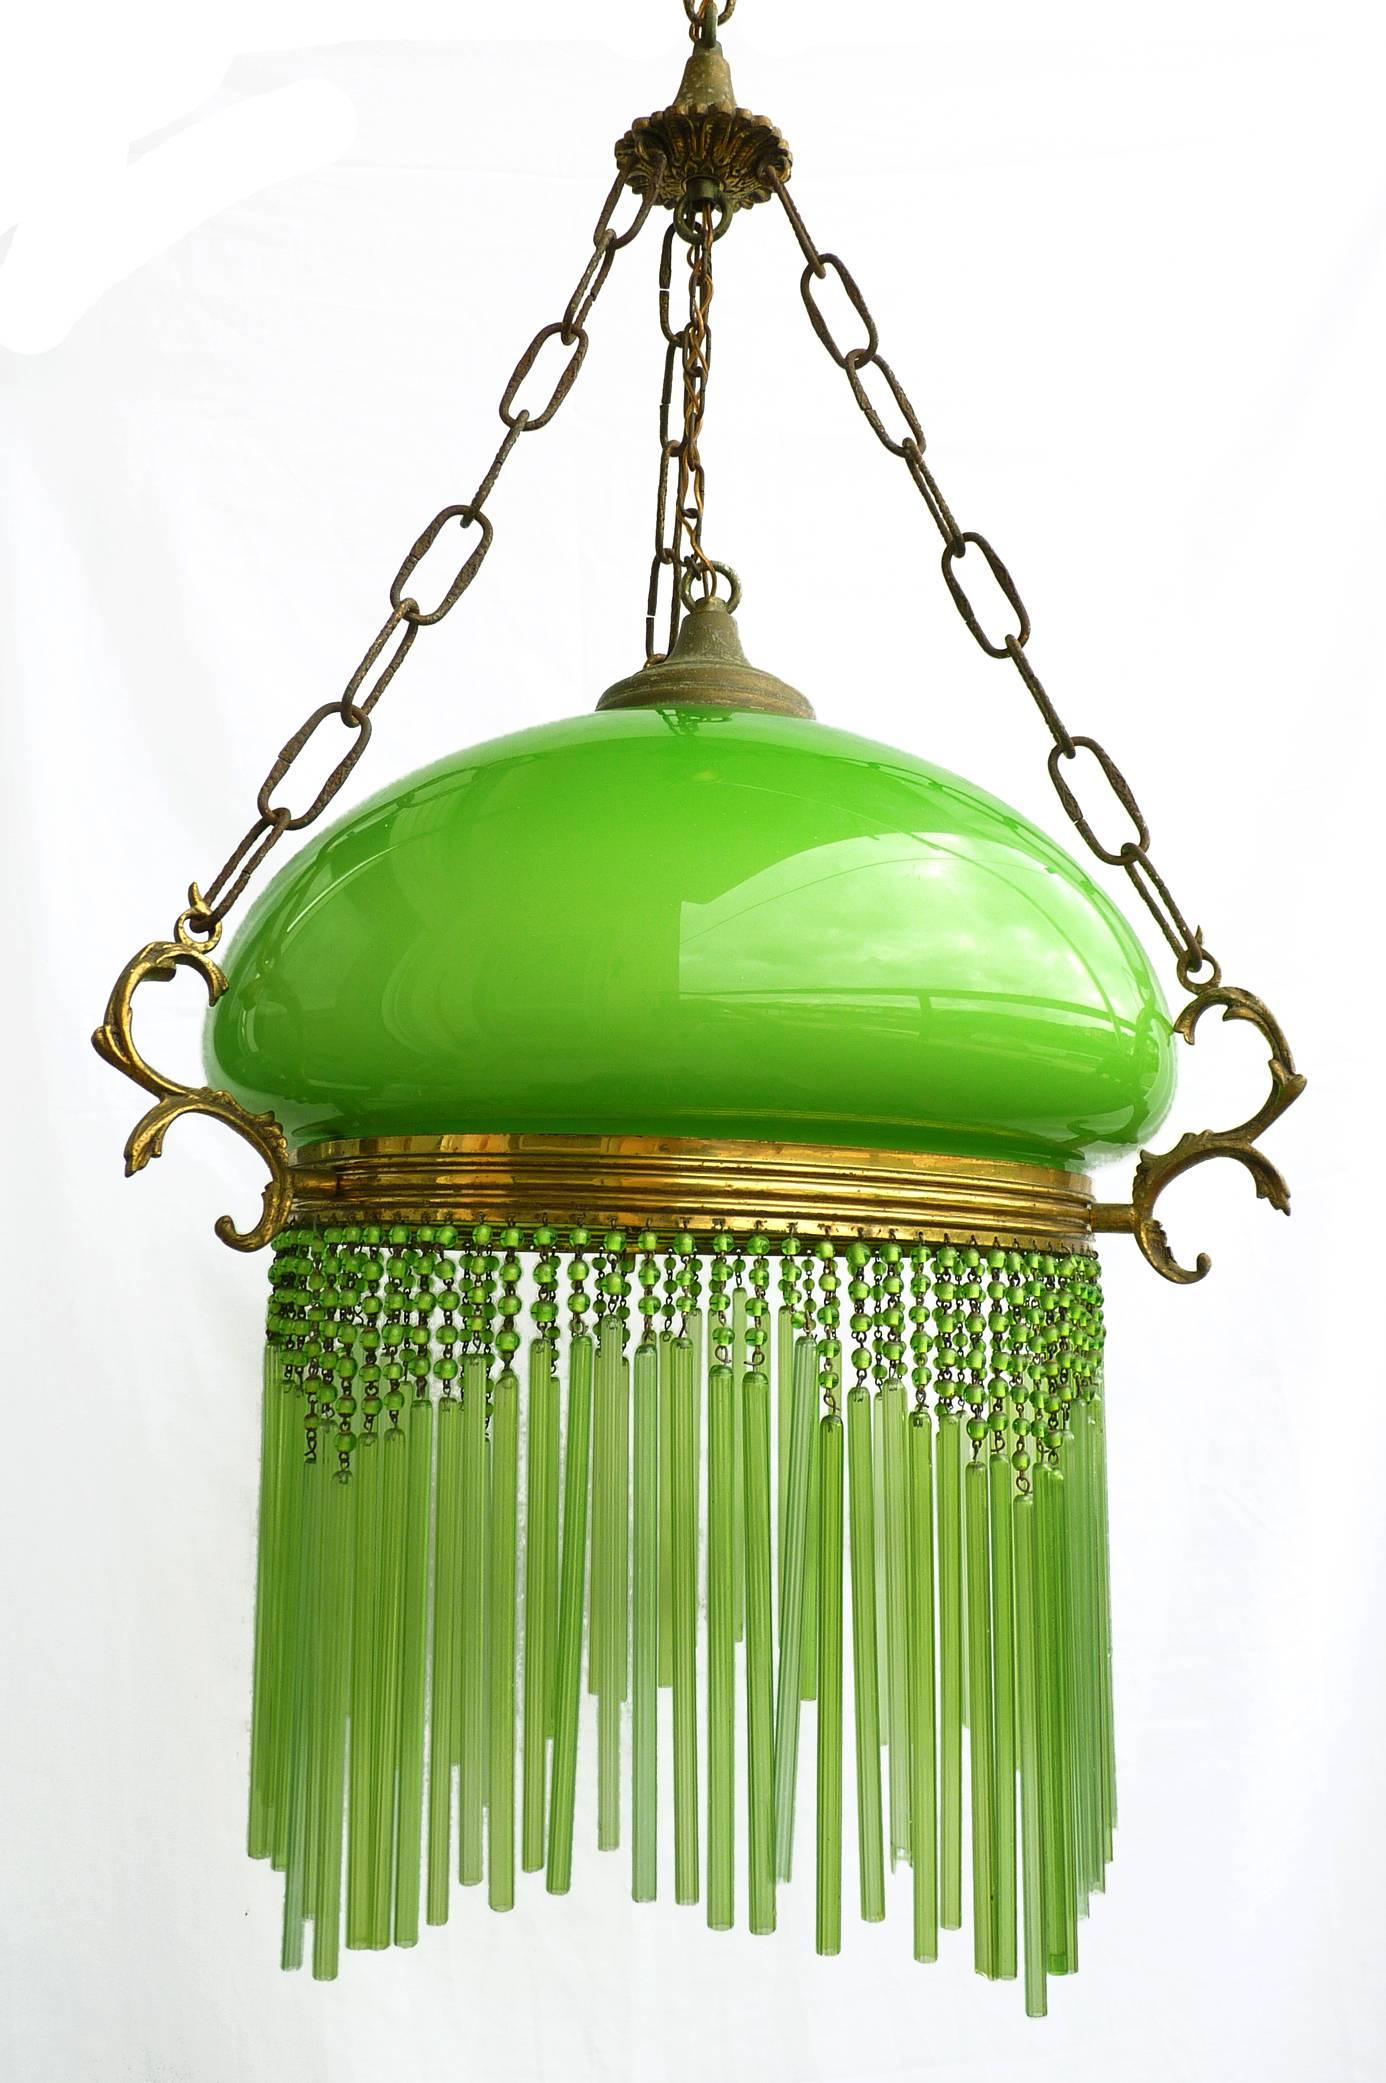 Schöner großer italienischer Jugendstil-/Art-Deco-Kronleuchter oder Hängelampe mit opalüberfangenem grünem Glasschirm und grünen Glashalmen
Maßnahmen:
Durchmesser 20 Zoll / 50 cm
Höhe 36 Zoll / 90 cm
Gewicht: 4 kg (9 lb.)
Eine Glühbirne E27-60 W,